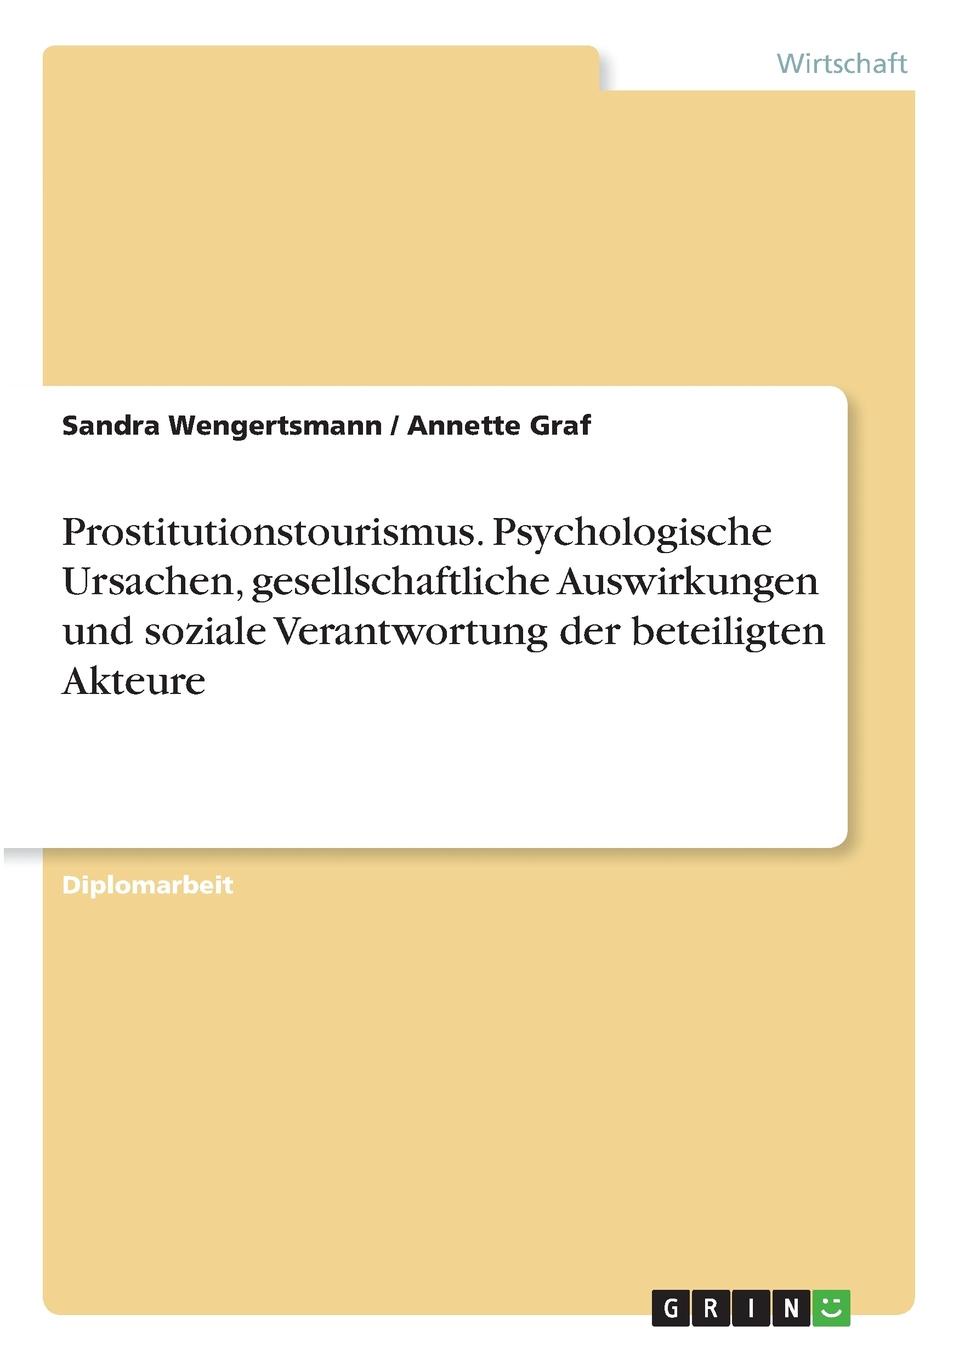 Prostitutionstourismus. Psychologische Ursachen, gesellschaftliche Auswirkungen und soziale Verantwortung der beteiligten Akteure